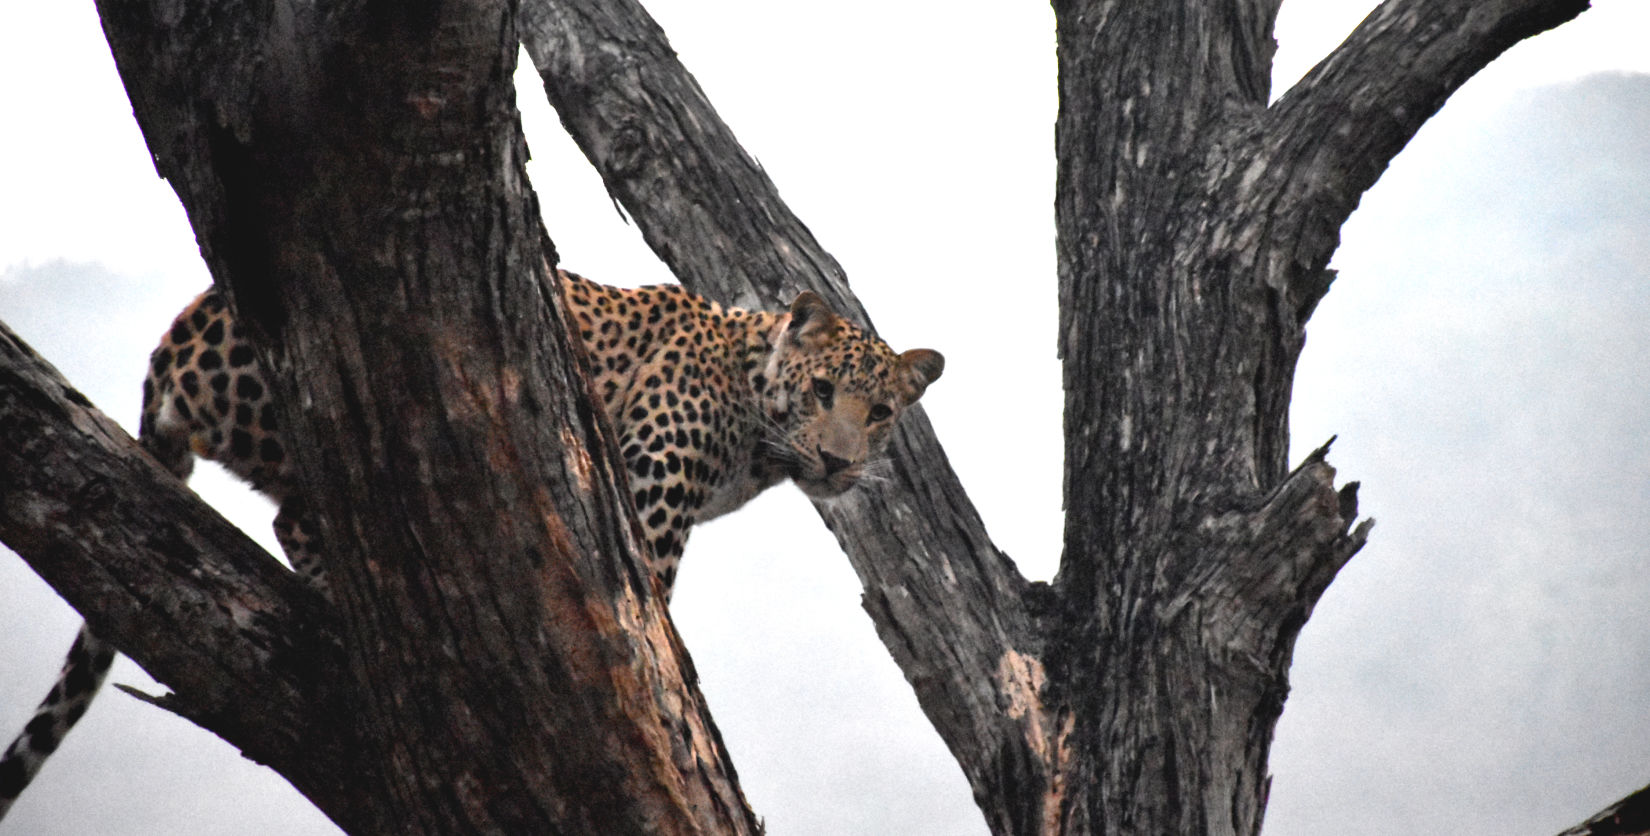 Jhalana Leopard Spotting Safari Package at Clarks Amer, Jaipur